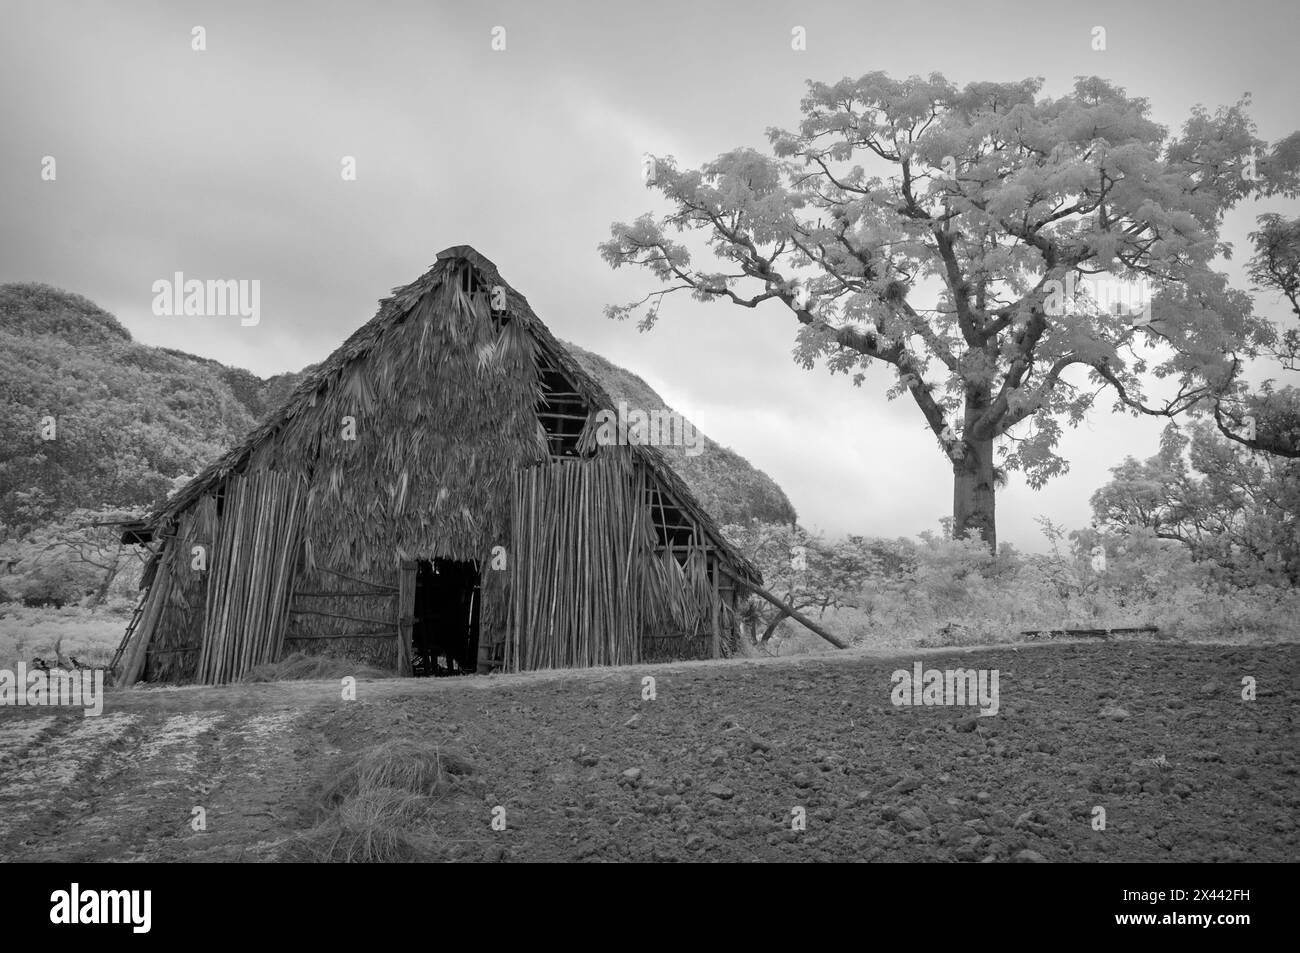 Une image infrarouge de bâtiments de ferme sur une petite plantation située dans le paysage de la vallée de Vinales, Vinales, Cuba Banque D'Images